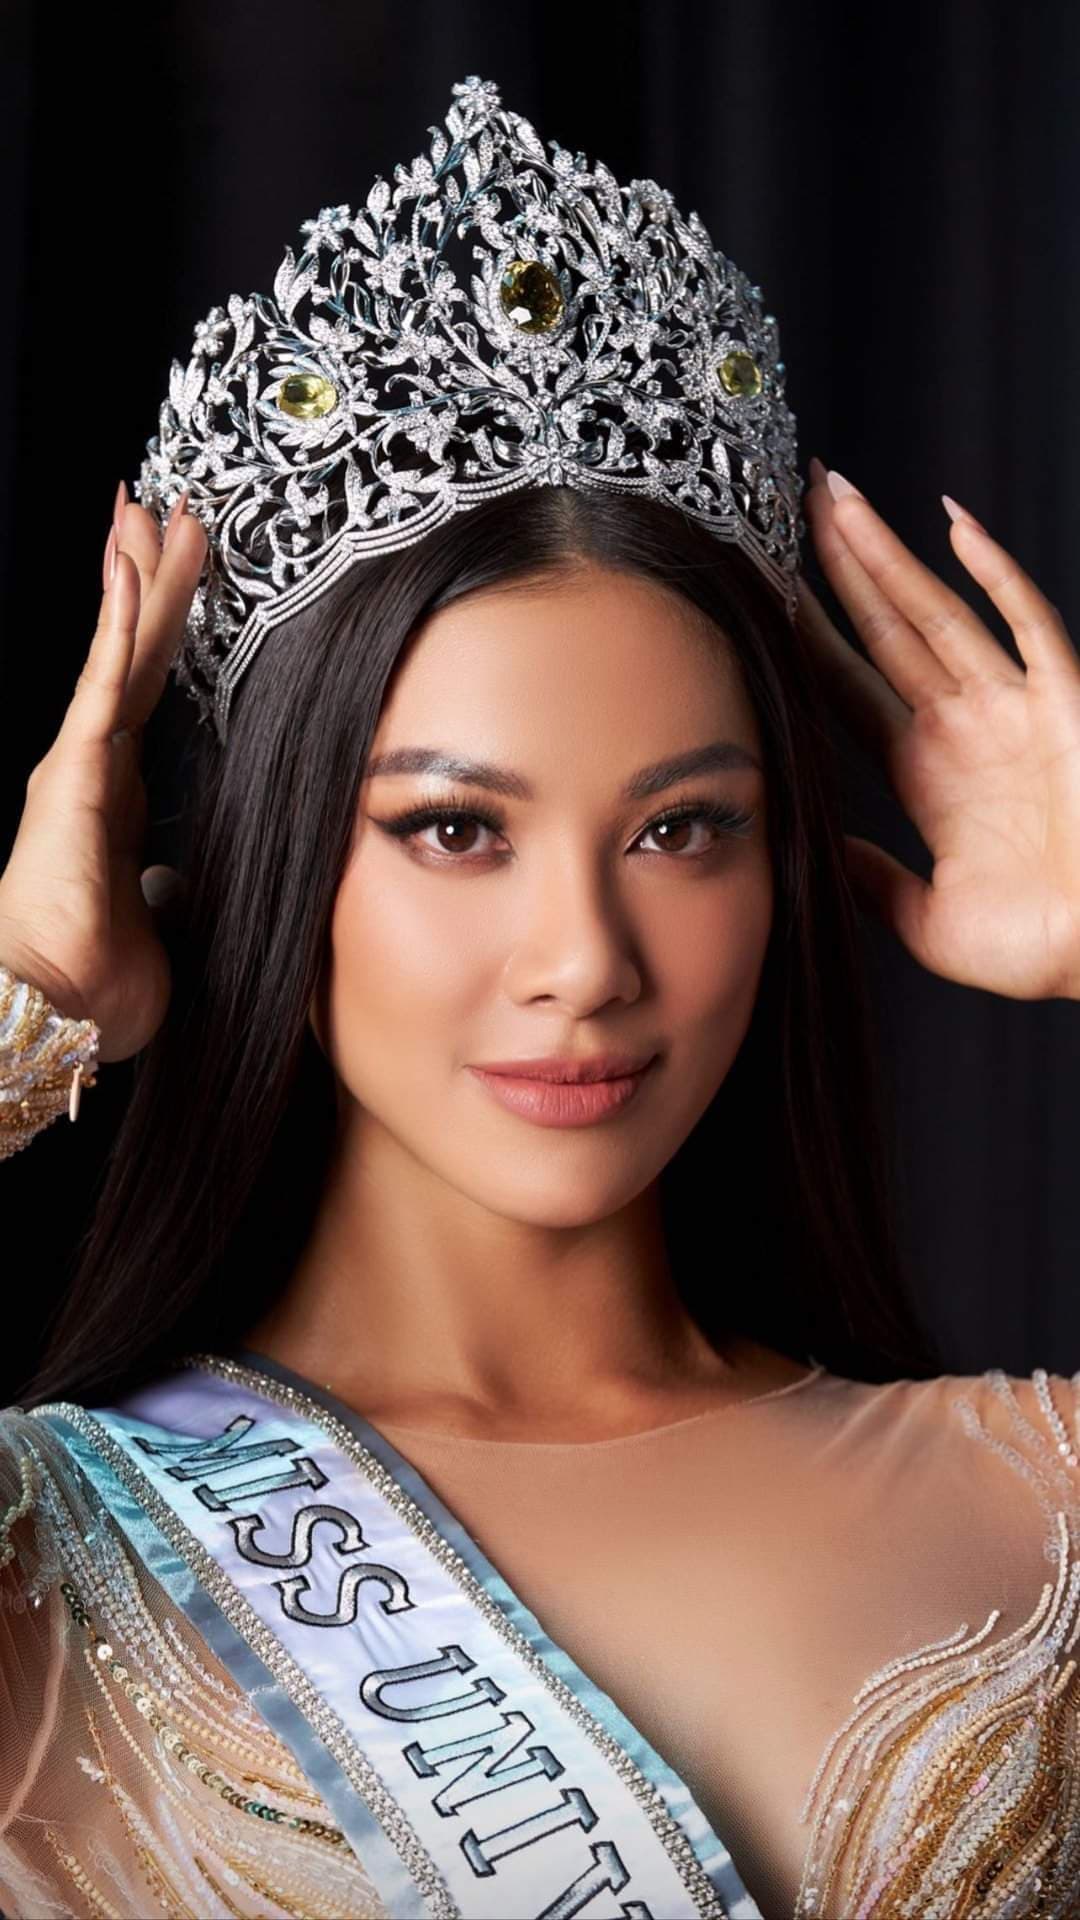 Kim Duyên vừa được trao vương miện, cộng đồng mạng liền tranh cãi dữ dội vì soi ra nhiều chi tiết giống hệt vương miện ở Miss Universe